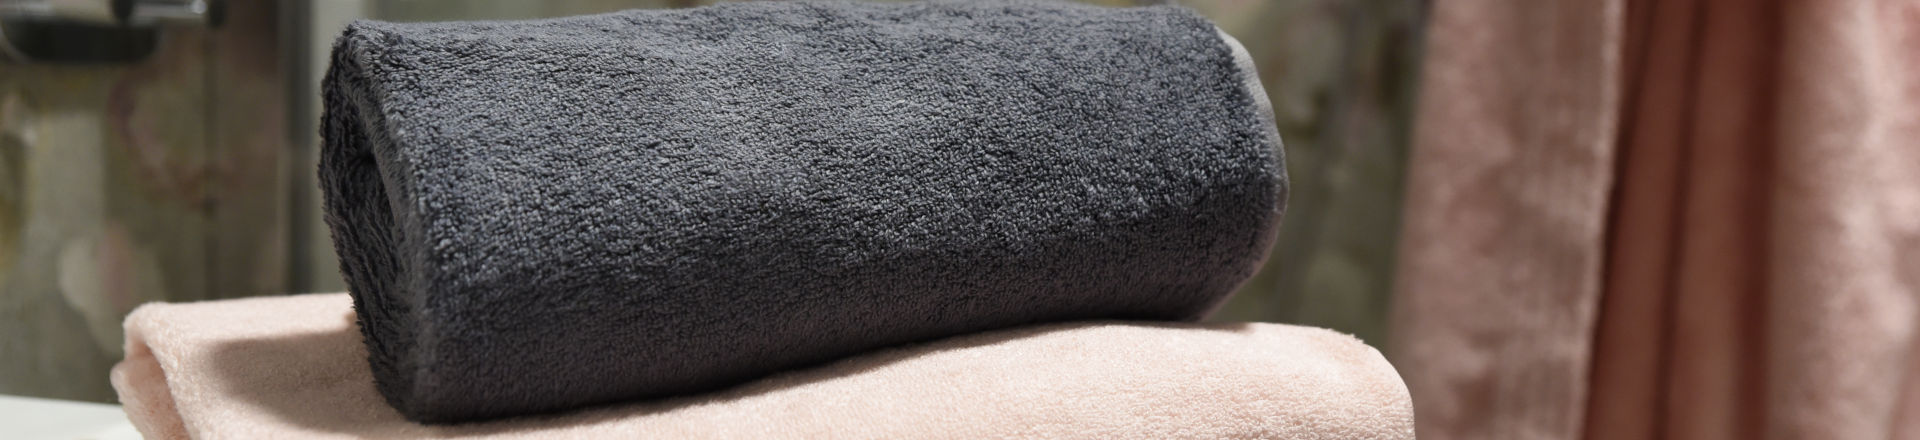 detailní fotografie ručníků SCANquilt s modalovým vláknem, modal, reálná fotka